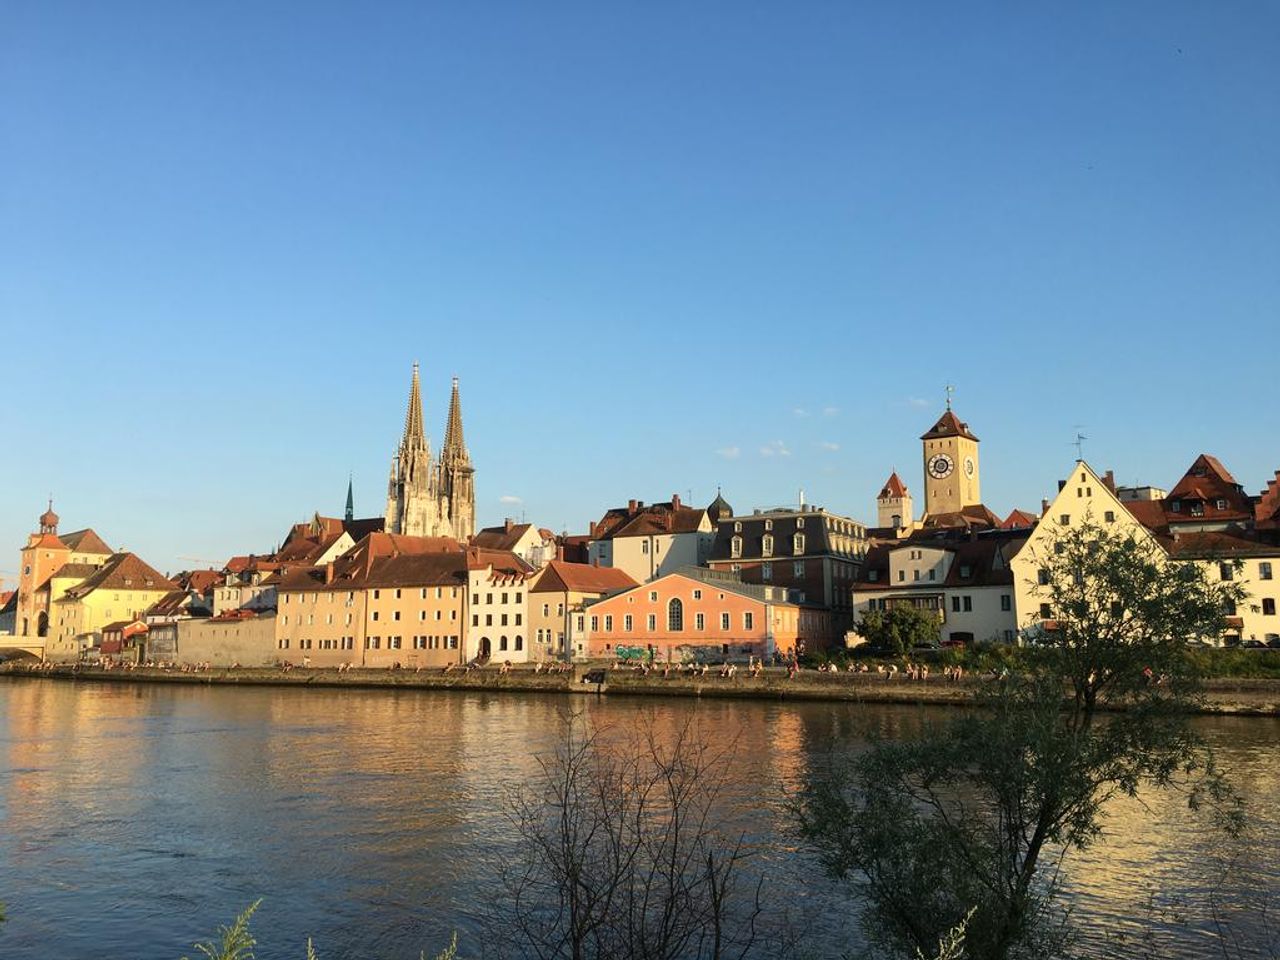 Strudelfahrt auf der Donau - 5 Tage in Regensburg